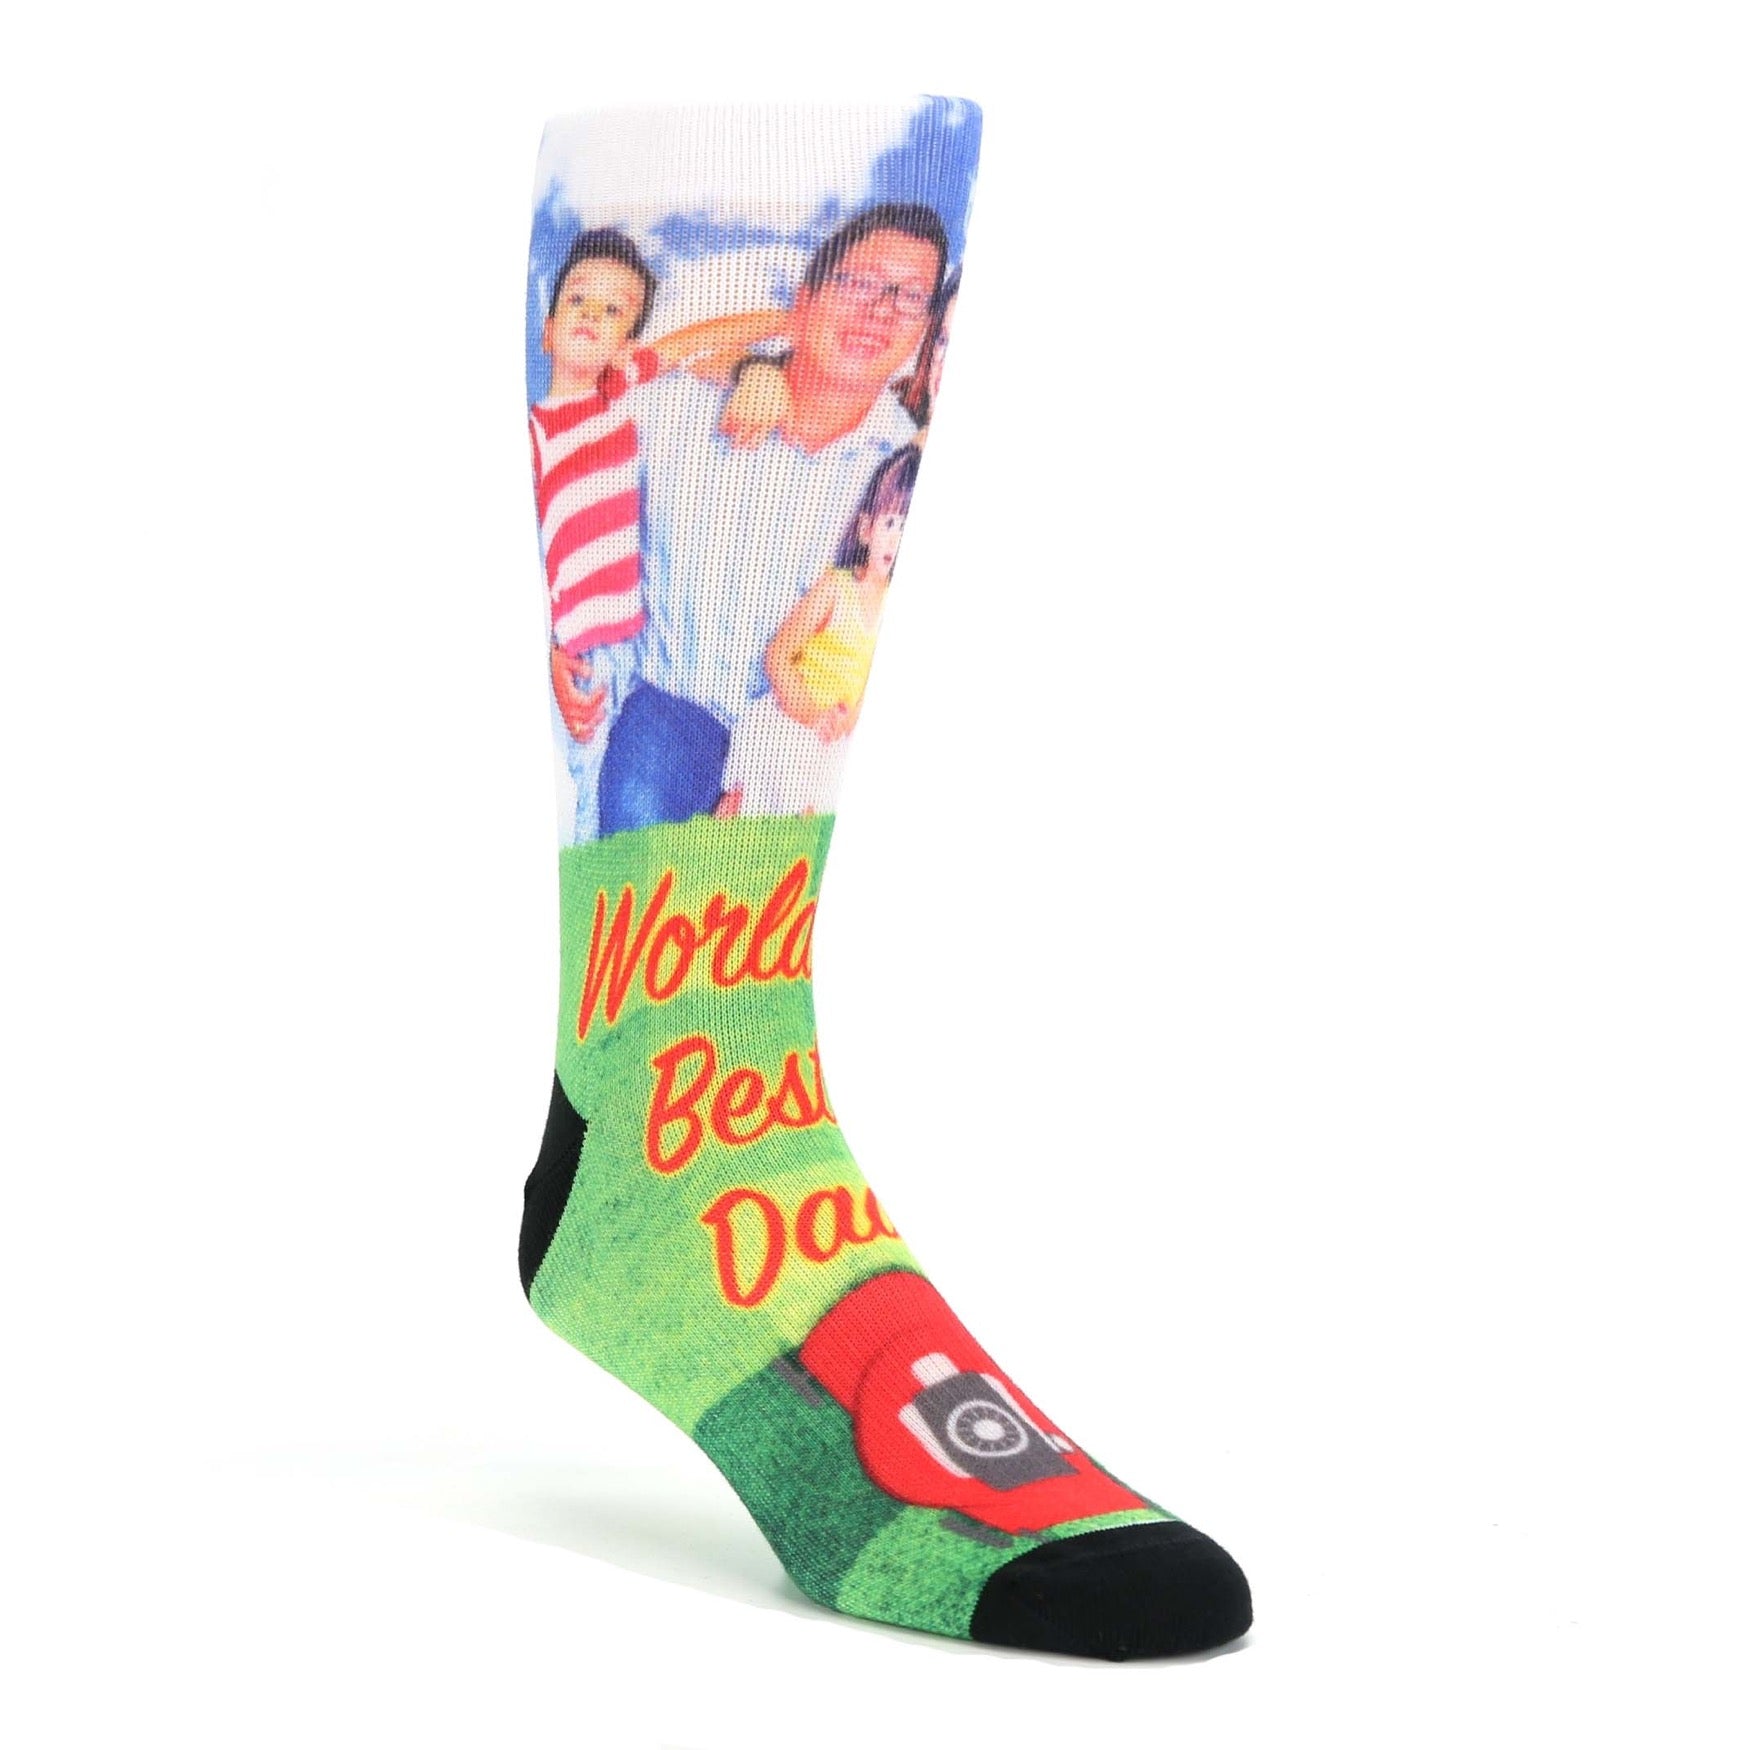 Father's Day Custom Family Photo Socks - Men's Custom Socks